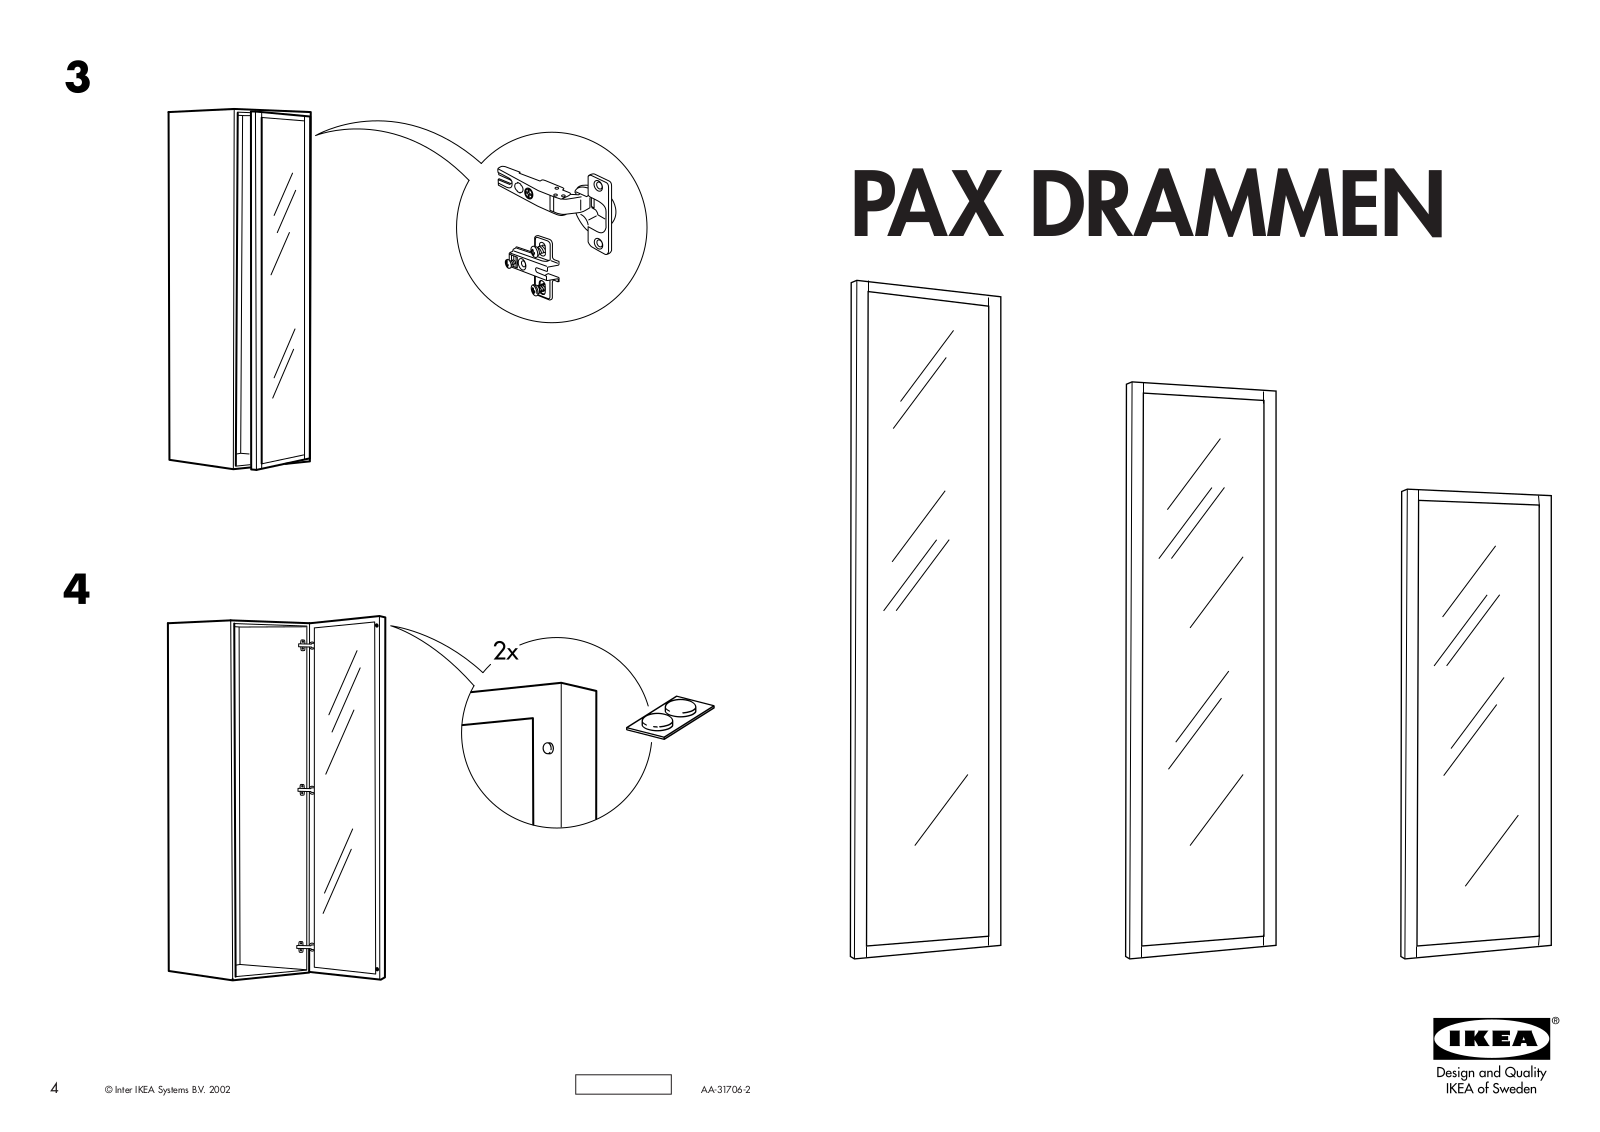 IKEA PAX DRAMMEN DOOR 20X63 Assembly Instruction